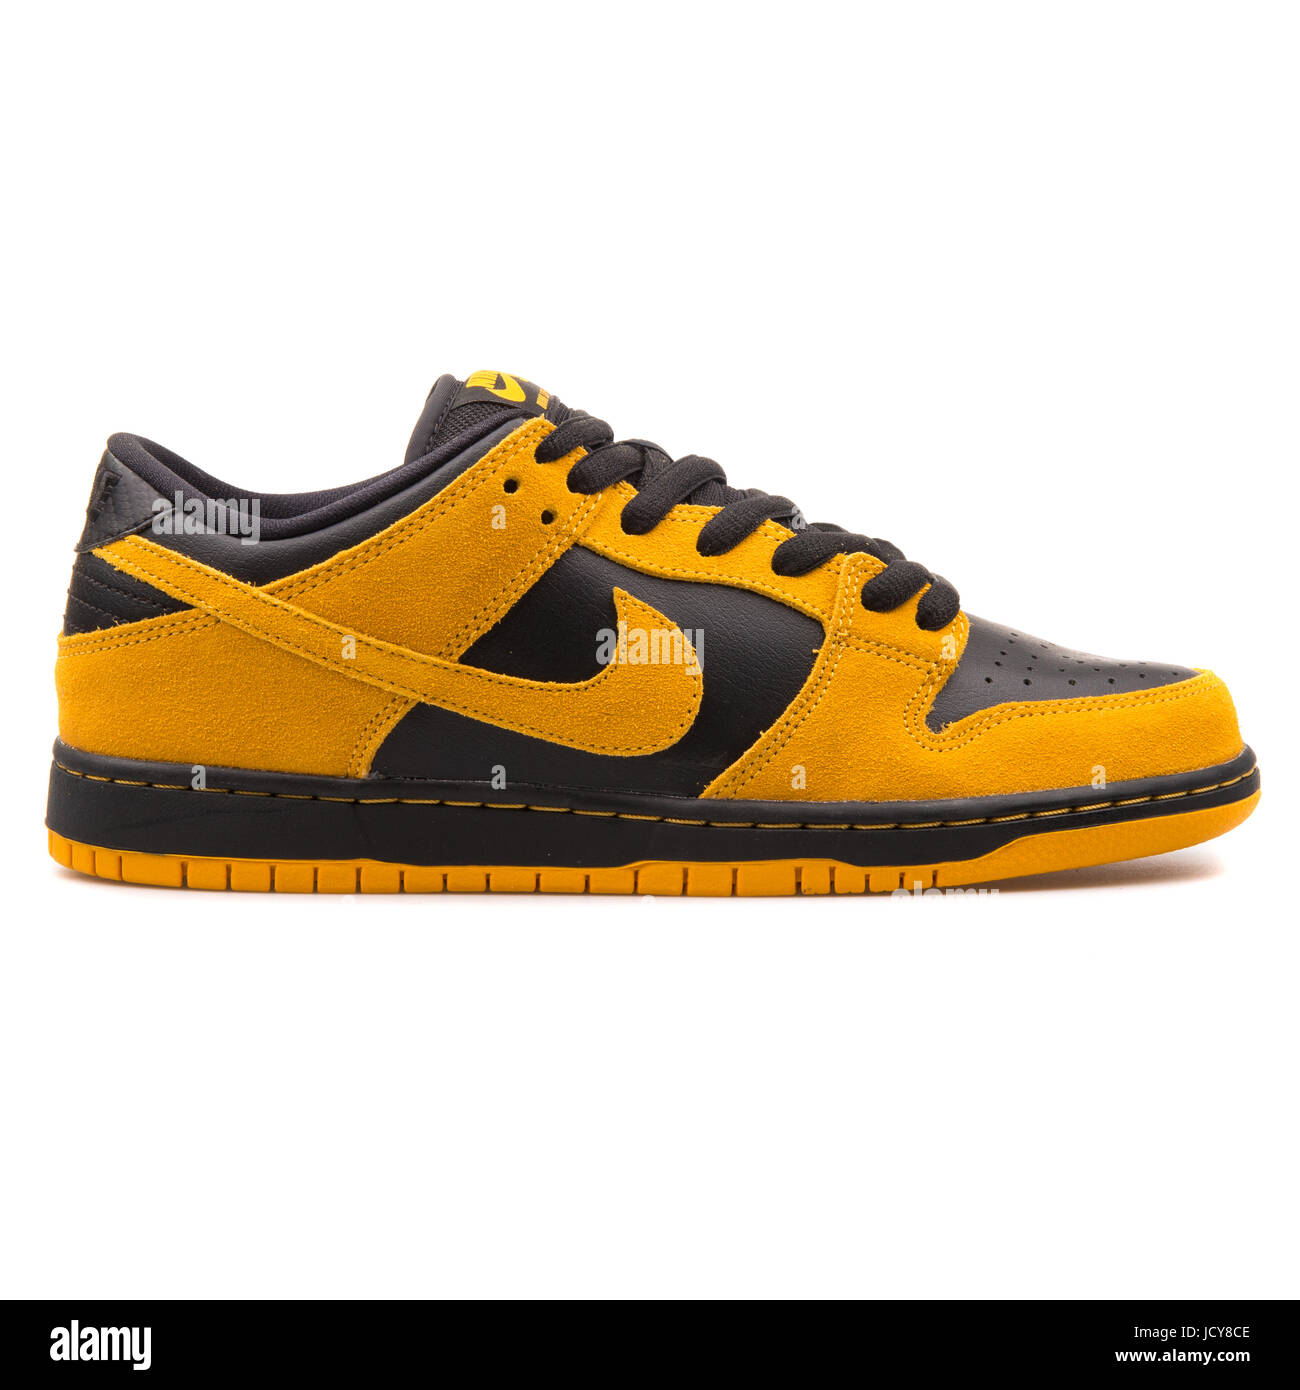 Nike Dunk Low Pro SB oro amarillo y negro hombres Skateboarding Shoes -  304292-706 Fotografía de stock - Alamy